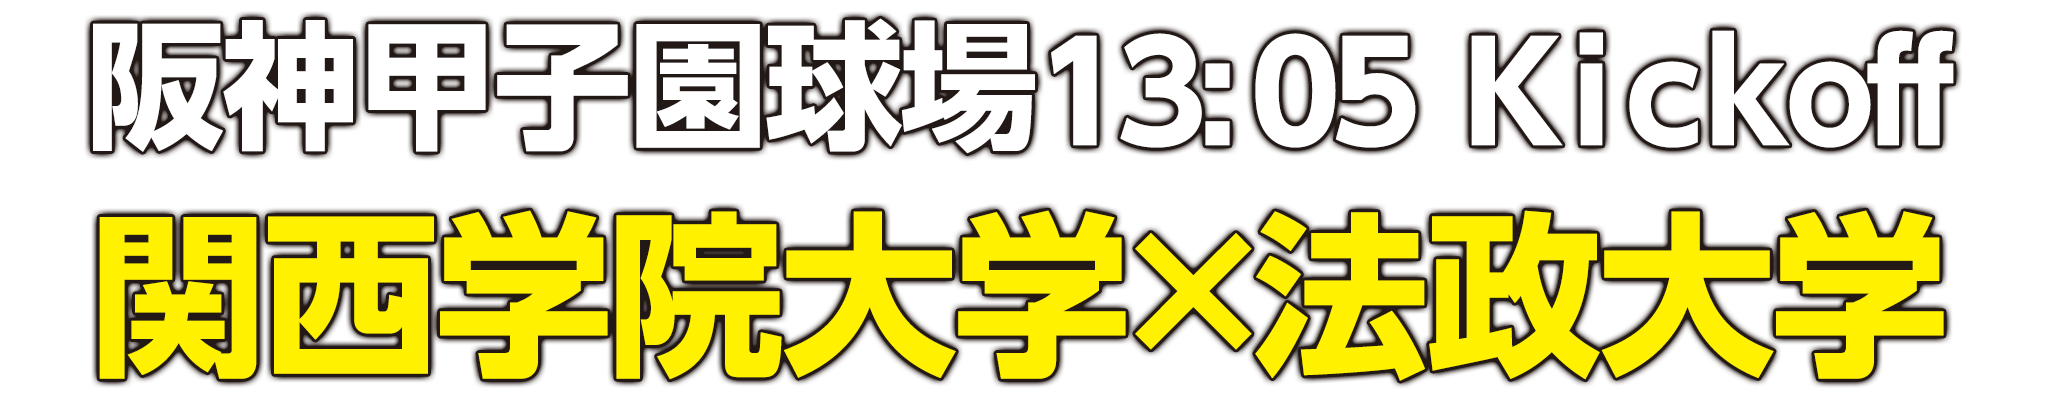 阪神甲子園球場13:05 Kickoff　関西学院大学×法政大学